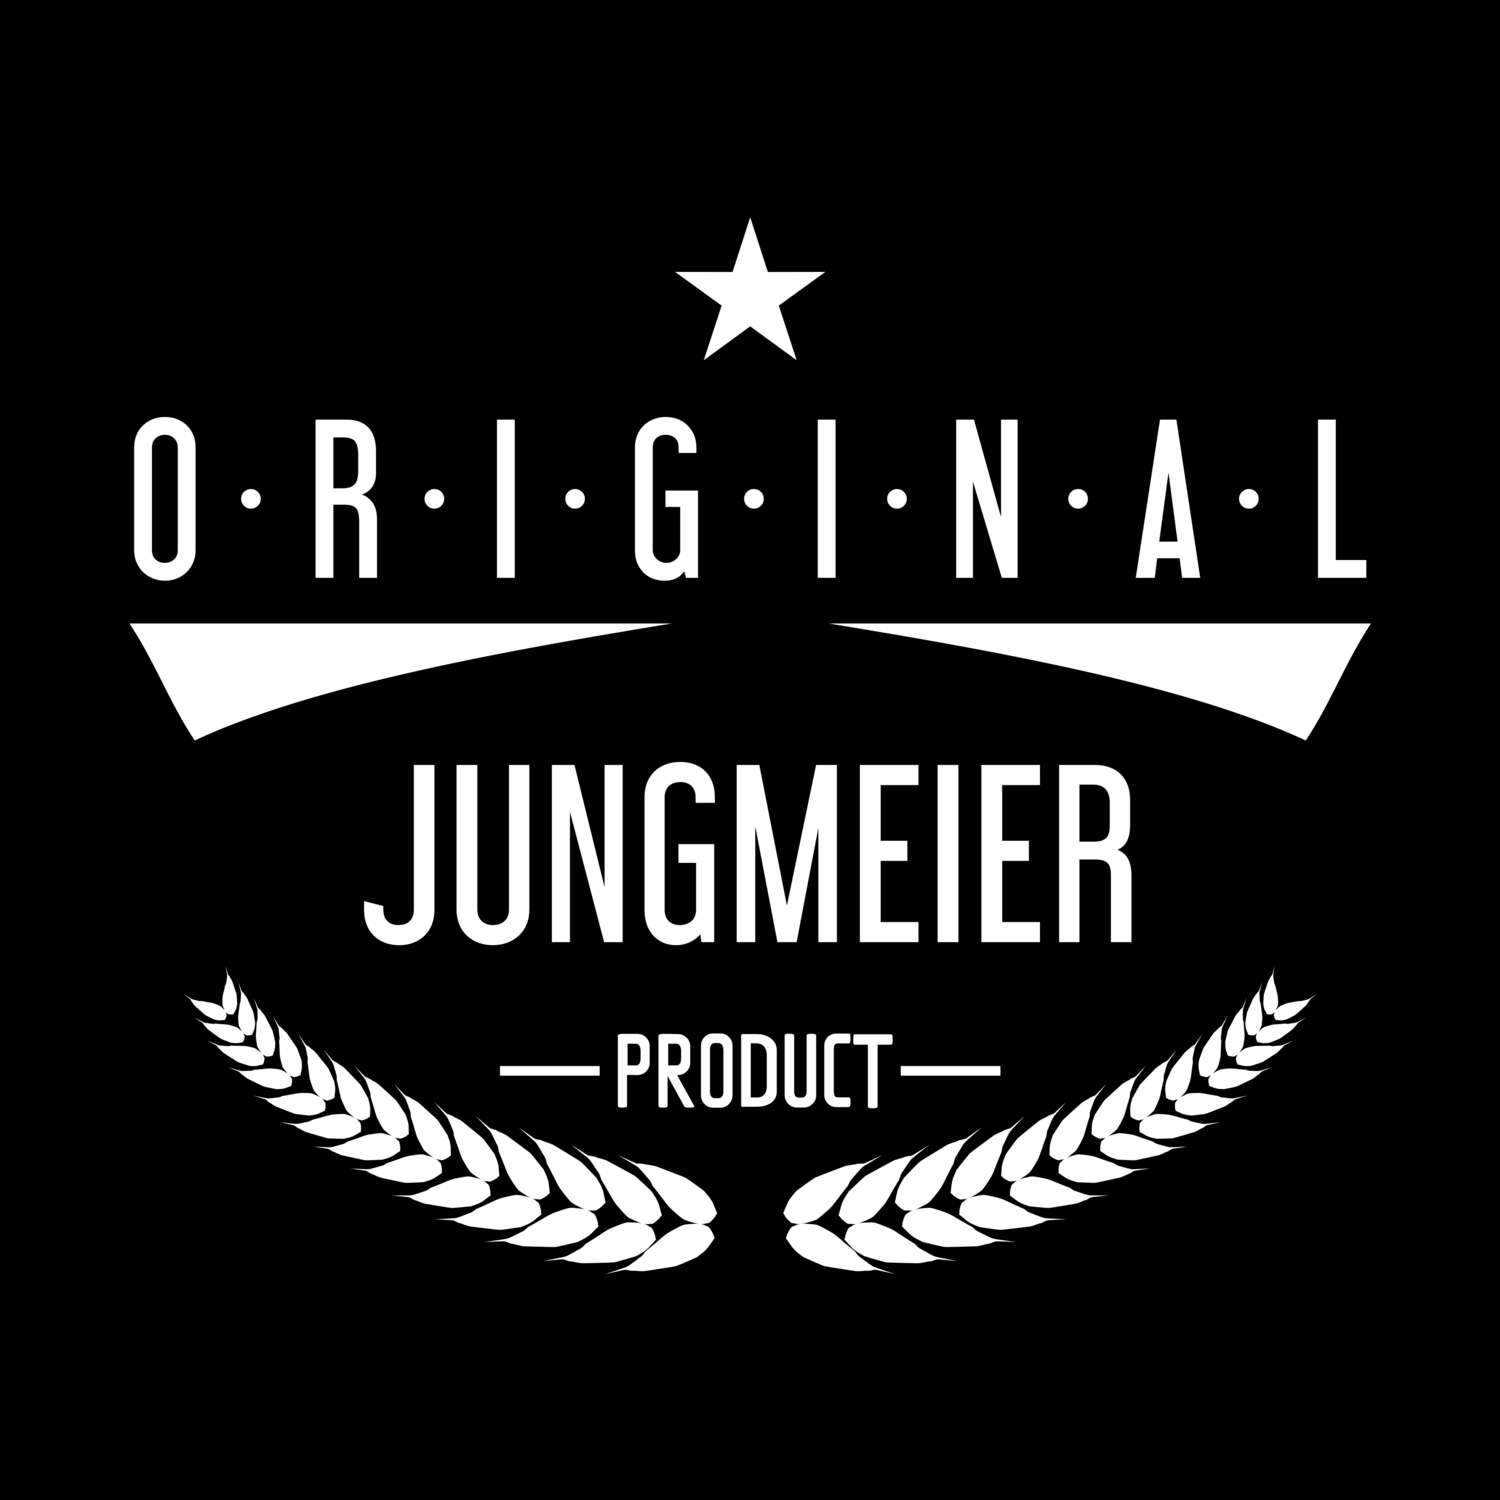 Jungmeier T-Shirt »Original Product«